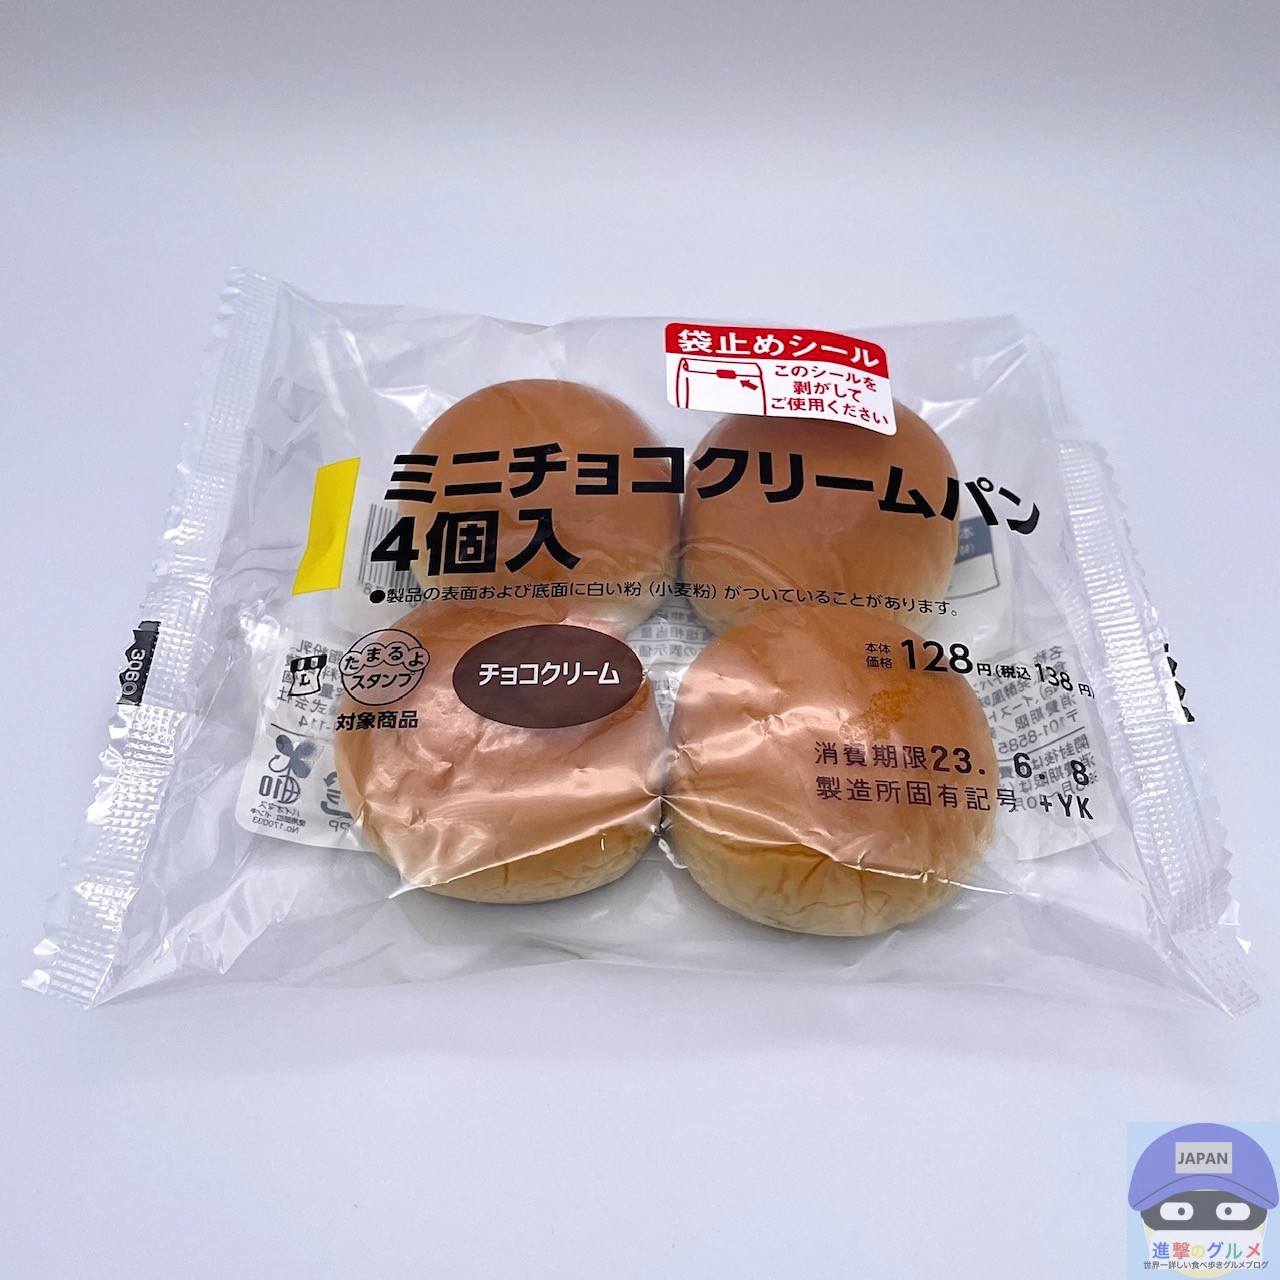 ローソン】ミニチョコクリームパン 4個入【新作菓子パン】進撃のグルメ ...